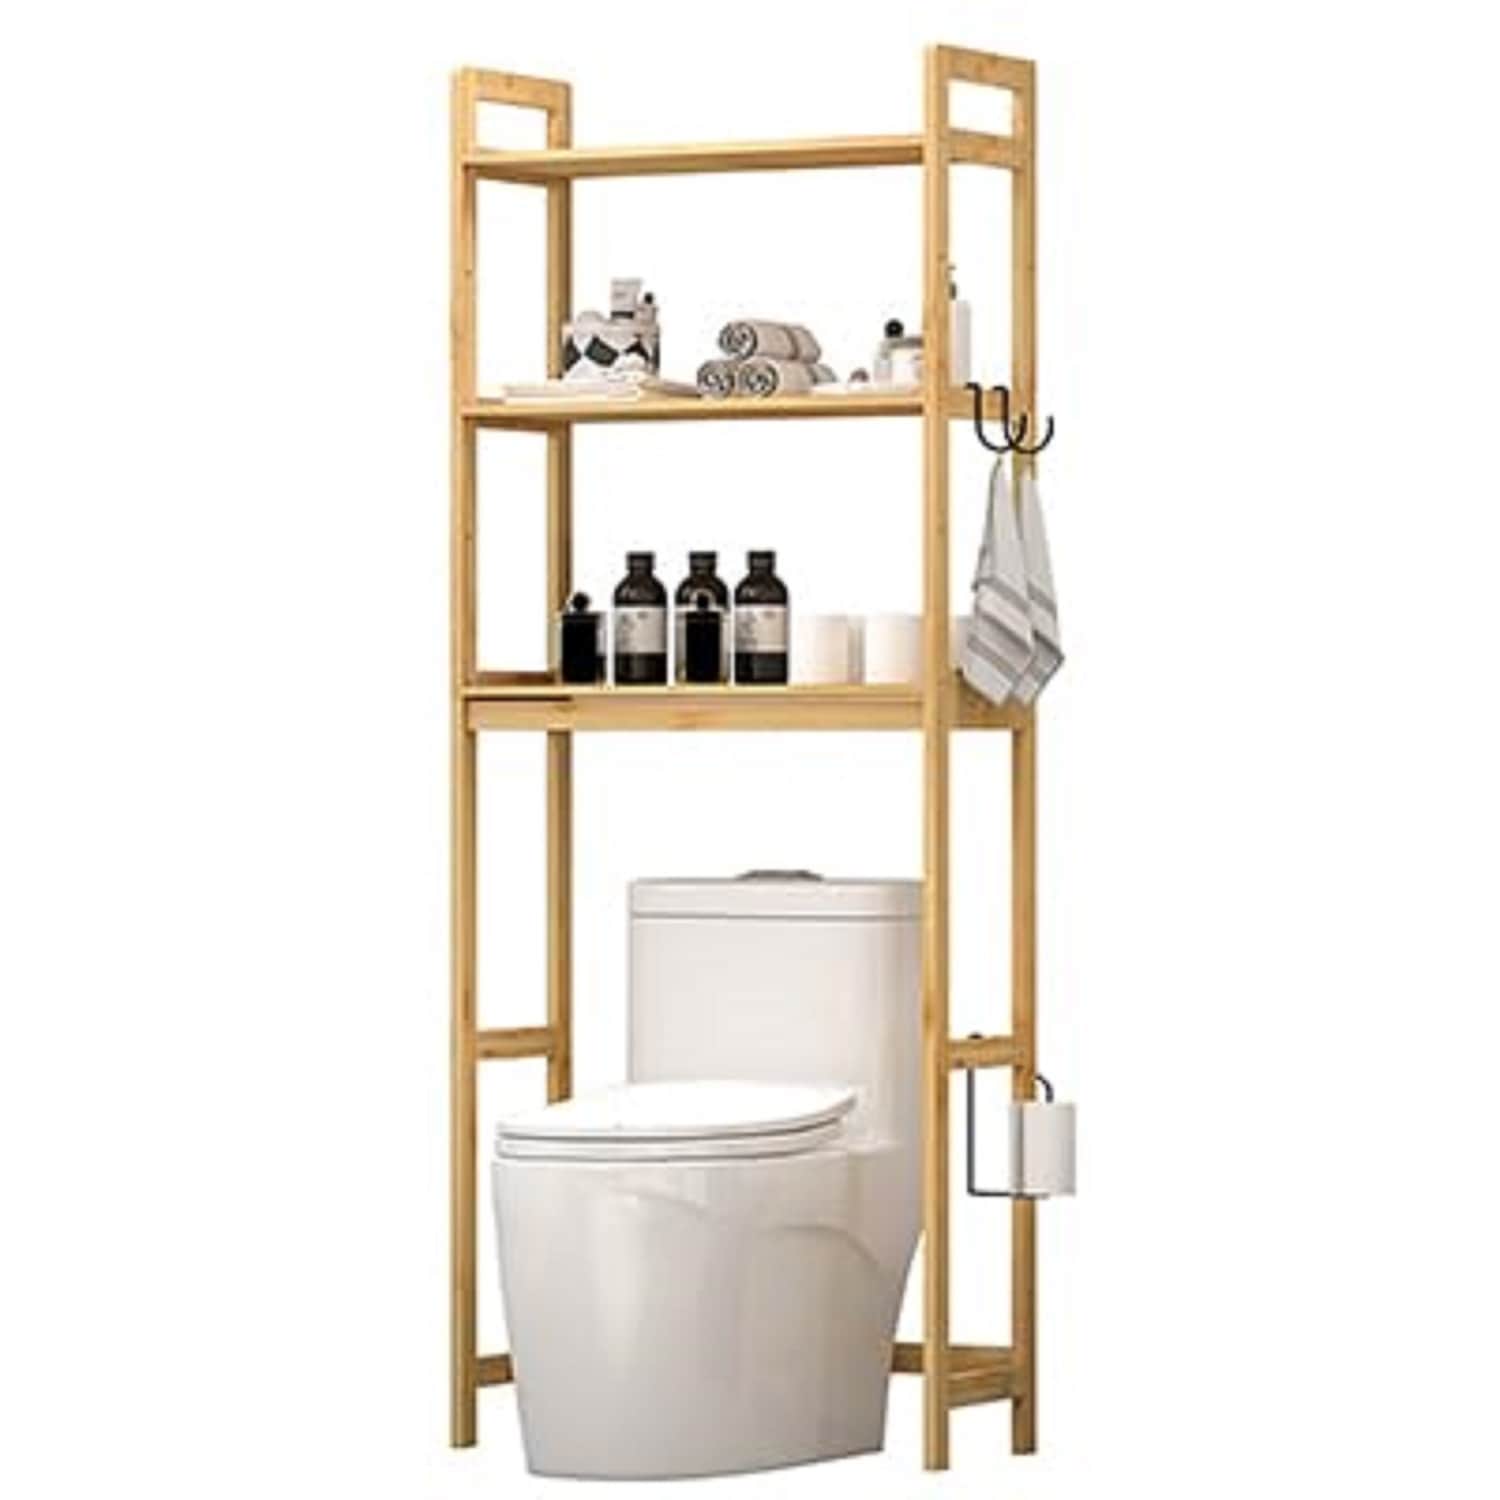 https://ak1.ostkcdn.com/images/products/is/images/direct/957915a520baf9458b48b33bad4f0f0972f9e16f/Bamboo-3-Tier-Bathroom-Organizer-Space-Saver-Bathroom-Shelf.jpg